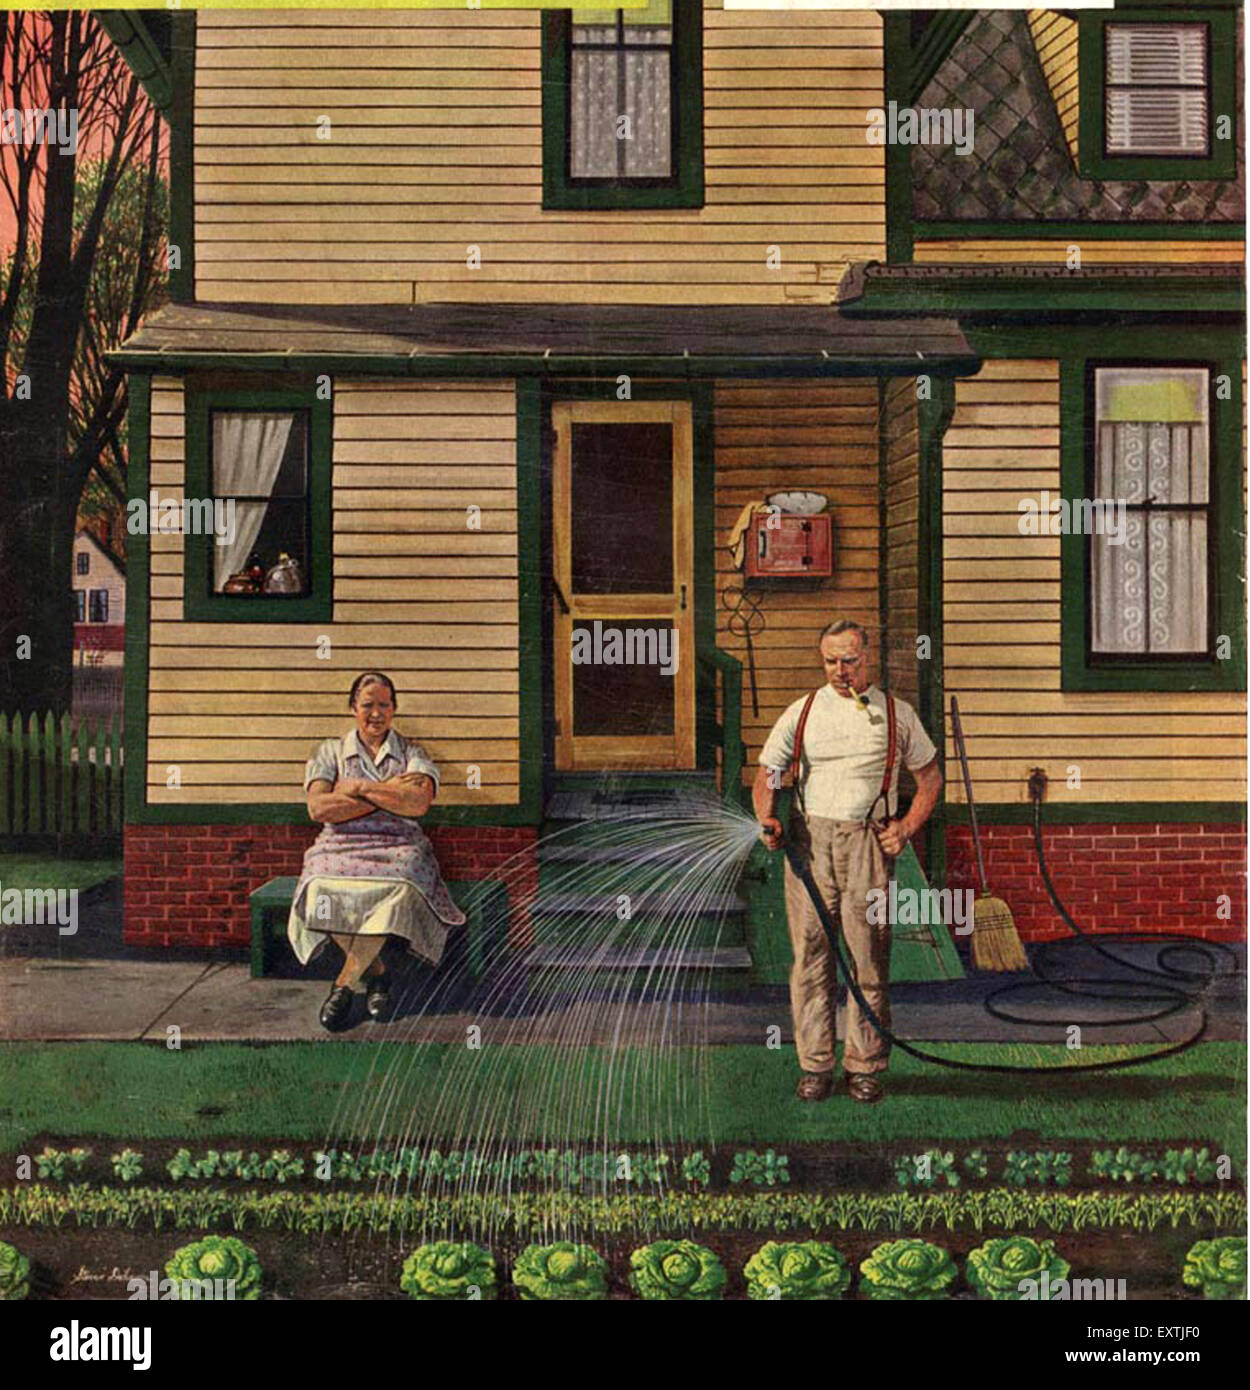 https://c8.alamy.com/comp/EXTJF0/1950s-usa-the-saturday-evening-post-magazine-cover-EXTJF0.jpg